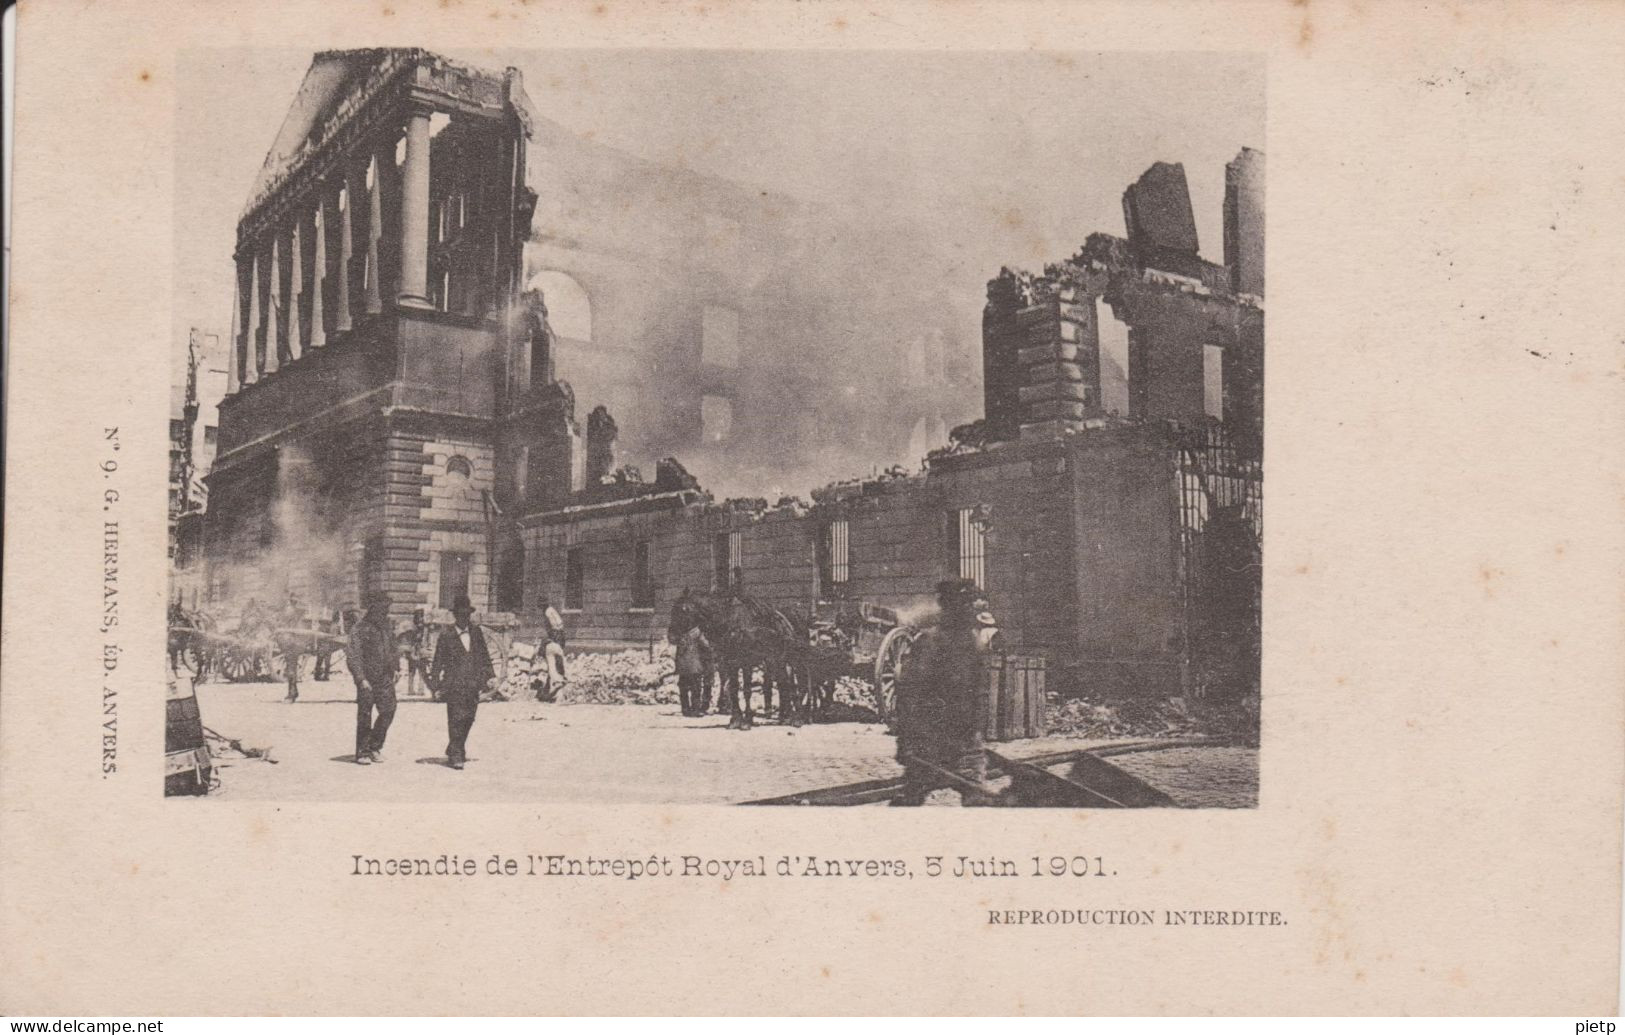 Anvers Incendie de l'Entrepôt Royal d'Anvers, 5 Juin 1901 : LOT de 9 cartes nos 1 à 9 - éditeur HERMANS